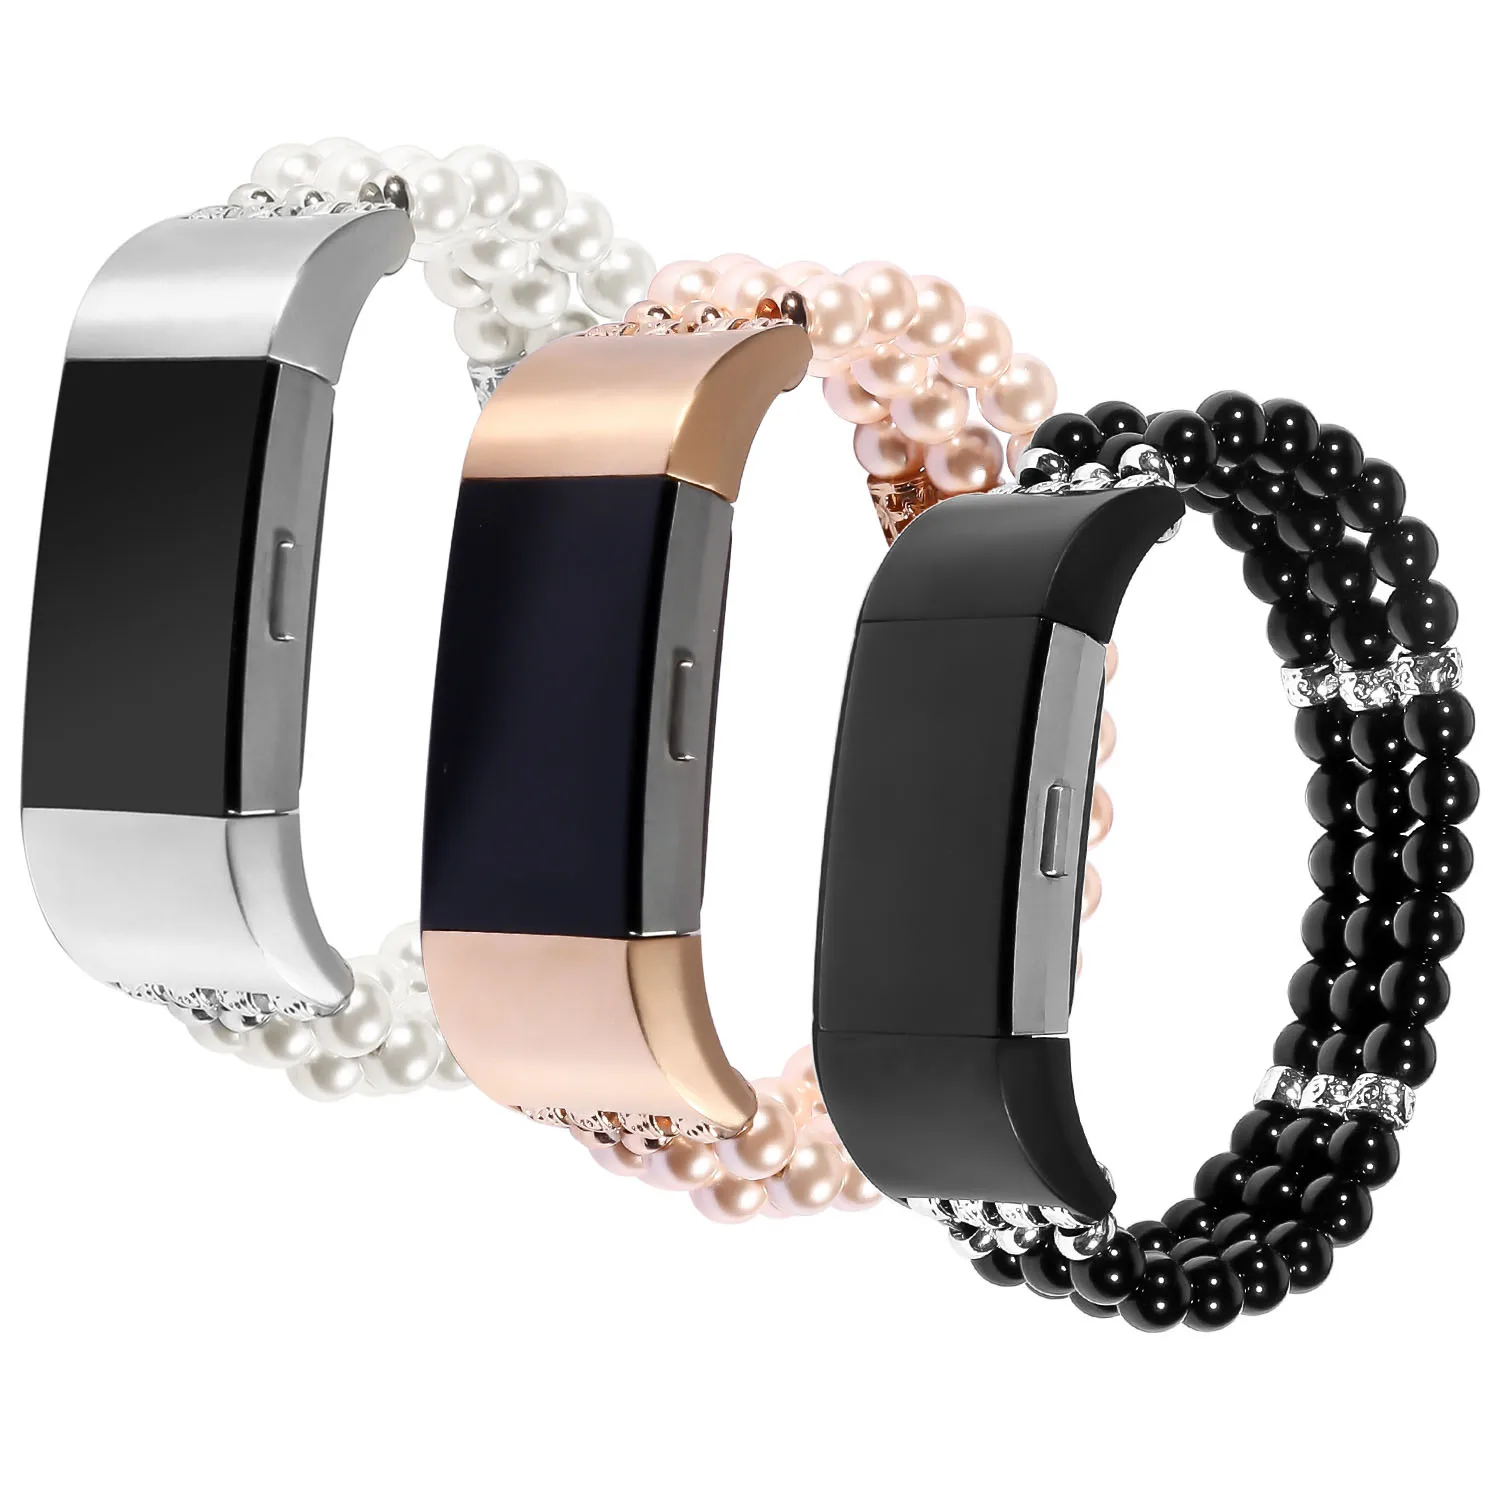 Новый Jewel Pearl стрейч часы ремешок для Fitbit заряд 2 ремень Для женщин девочек Браслет для Fitbit заряд 2 Smart наручные группа 3PZ